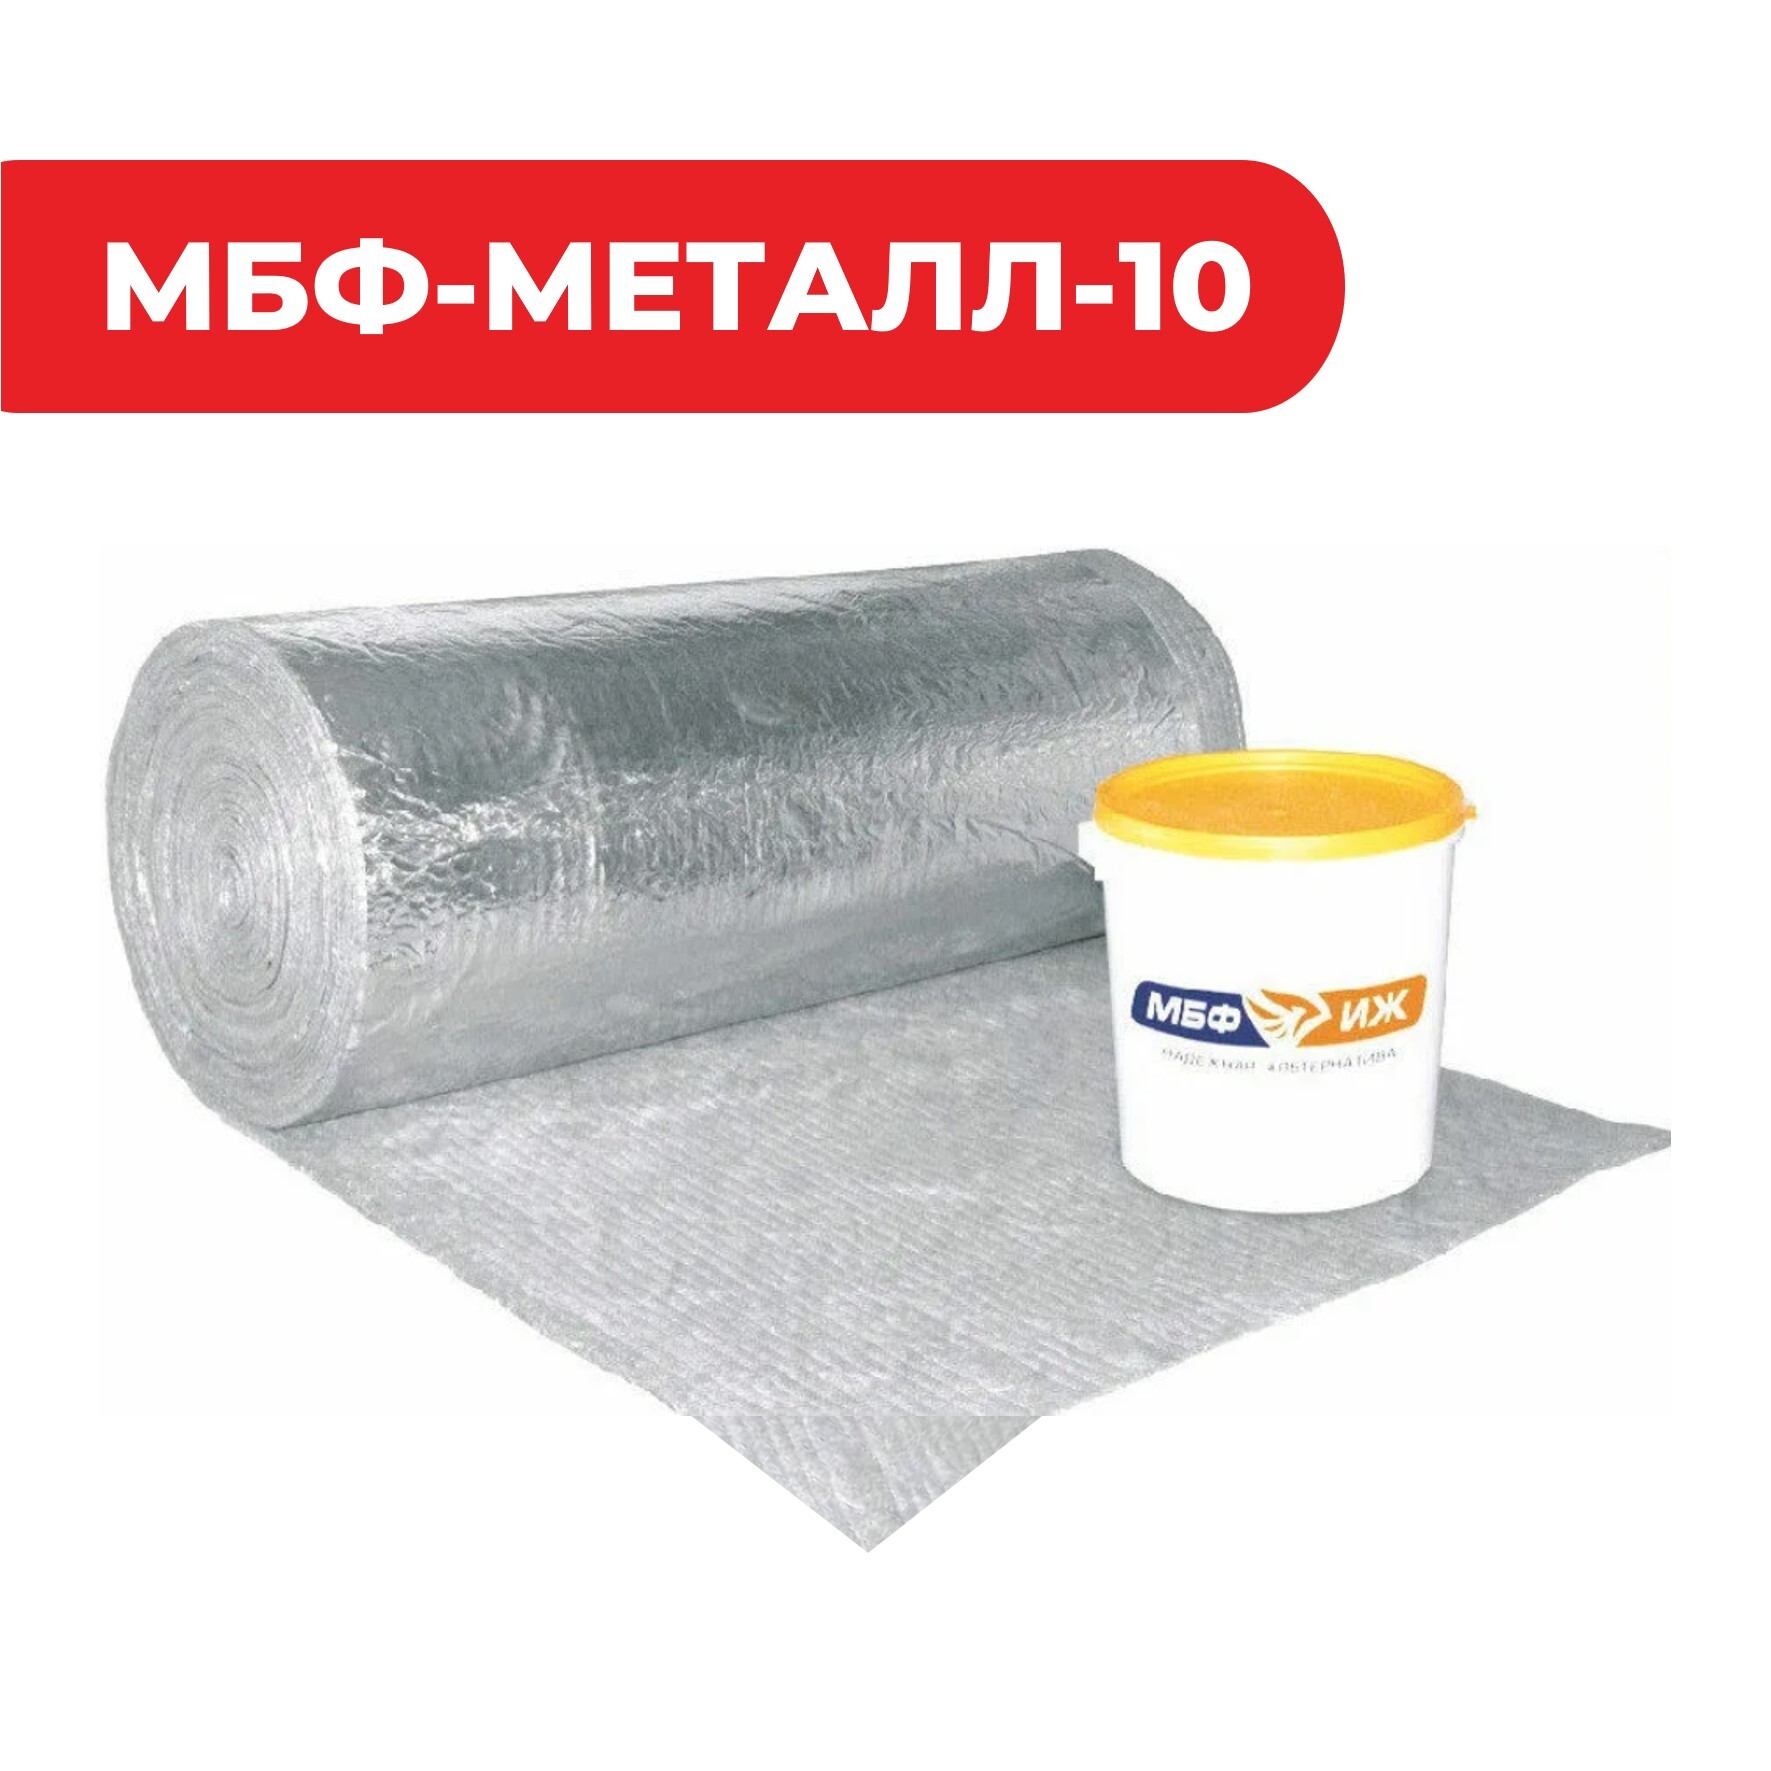 Конструктивная система огнезащиты металлоконструкций «МБФ-МЕТАЛЛ-10»